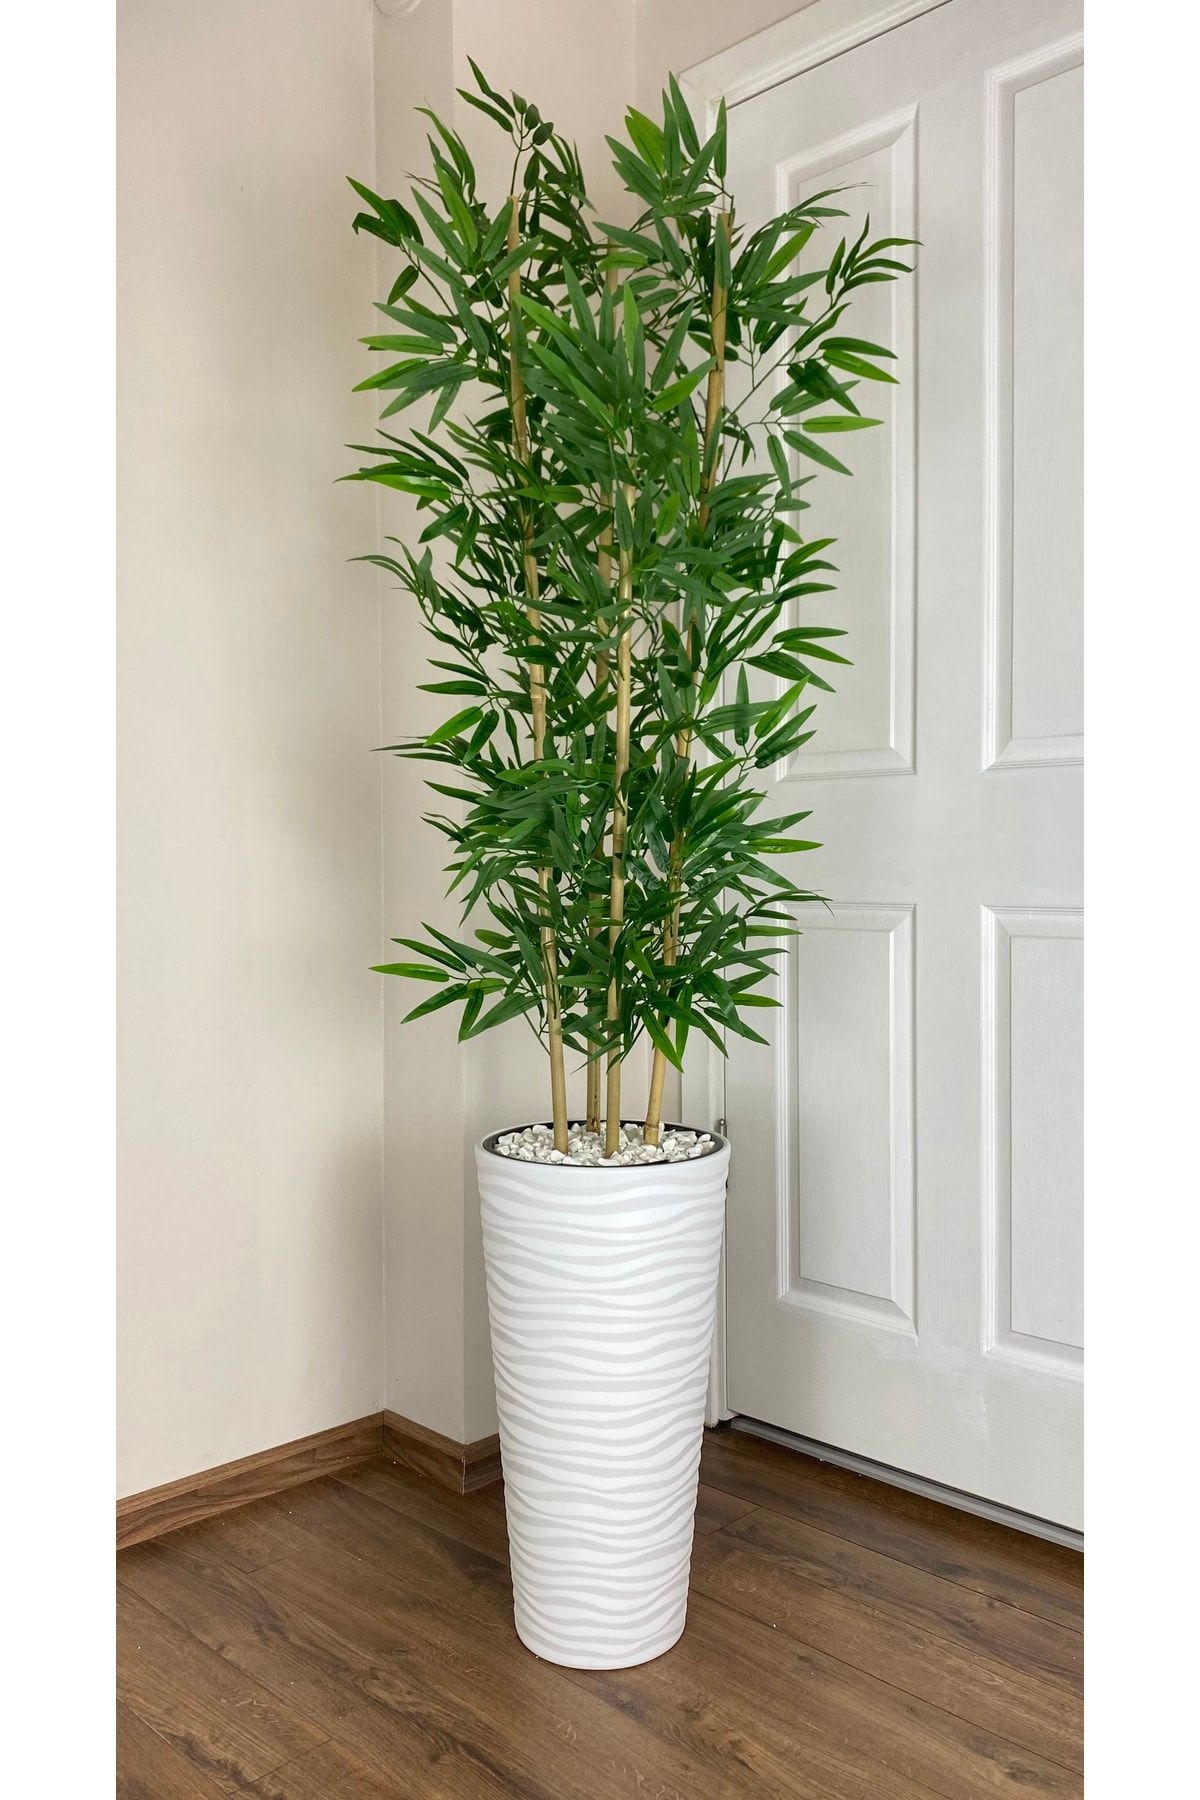 BİÇİÇEK Yapay Bambu Ağacı 180cm Yoğun Yapraklı Beyaz Renk Kumsal Saksıda